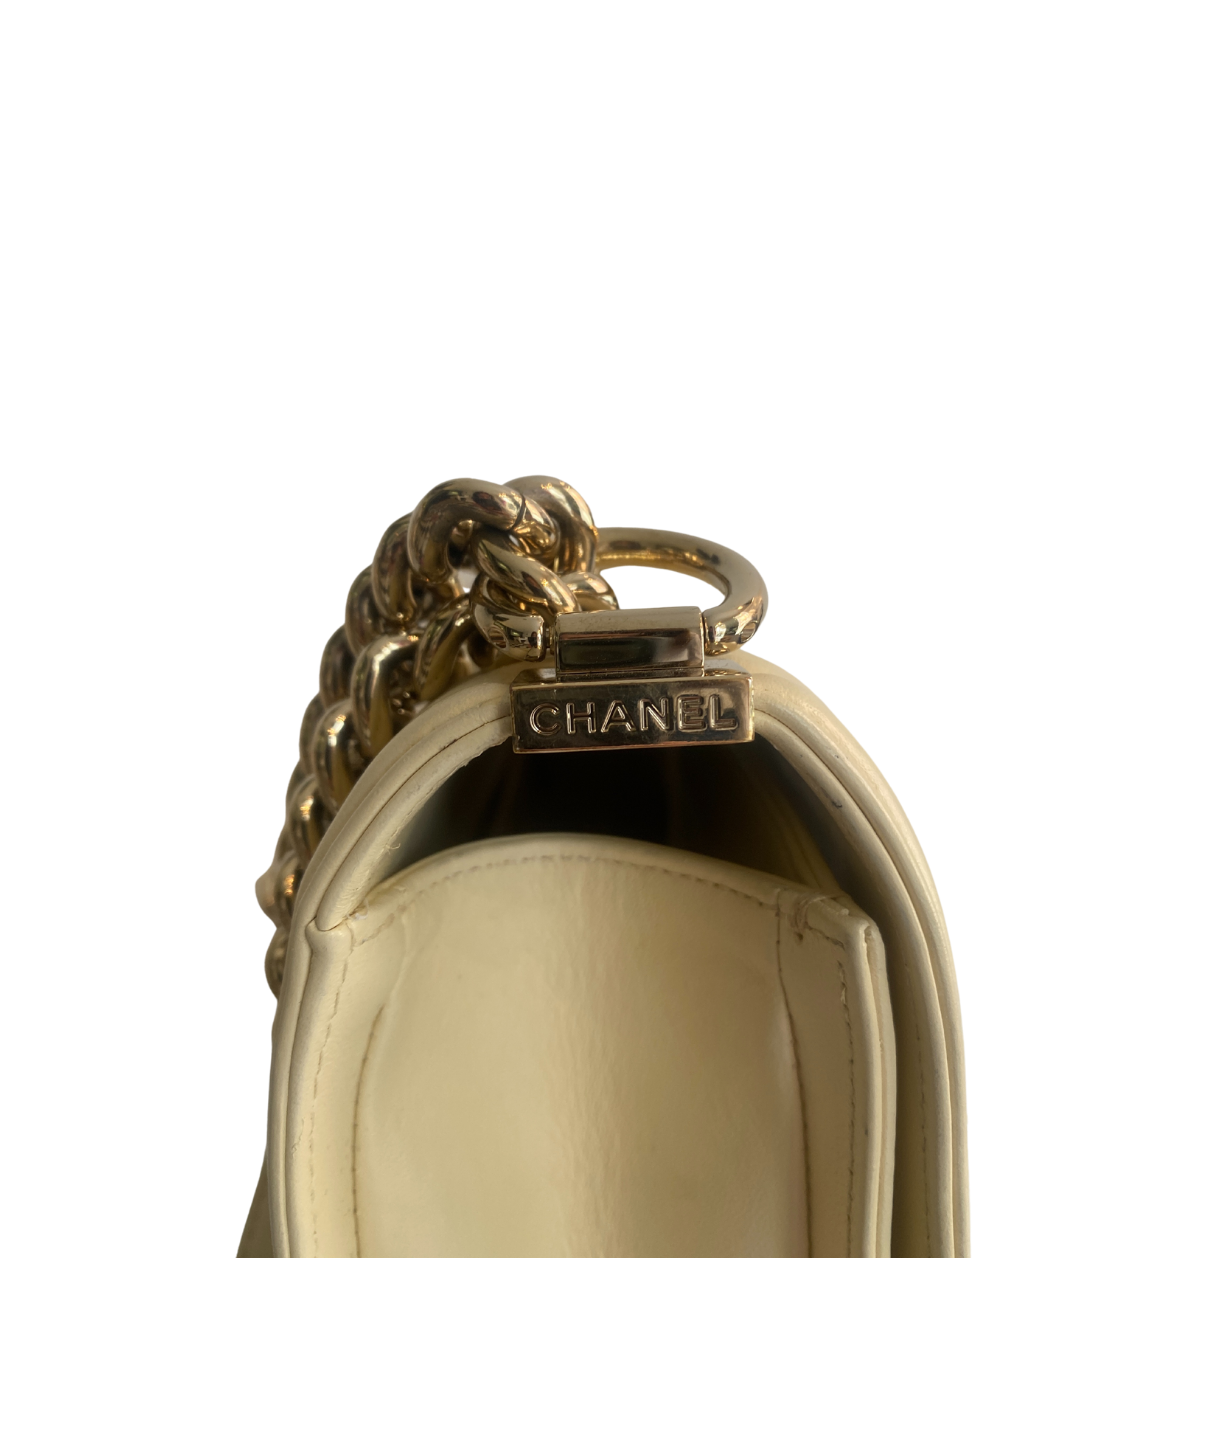 Chanel Boy: caratteristiche e prezzo della borsa iconica